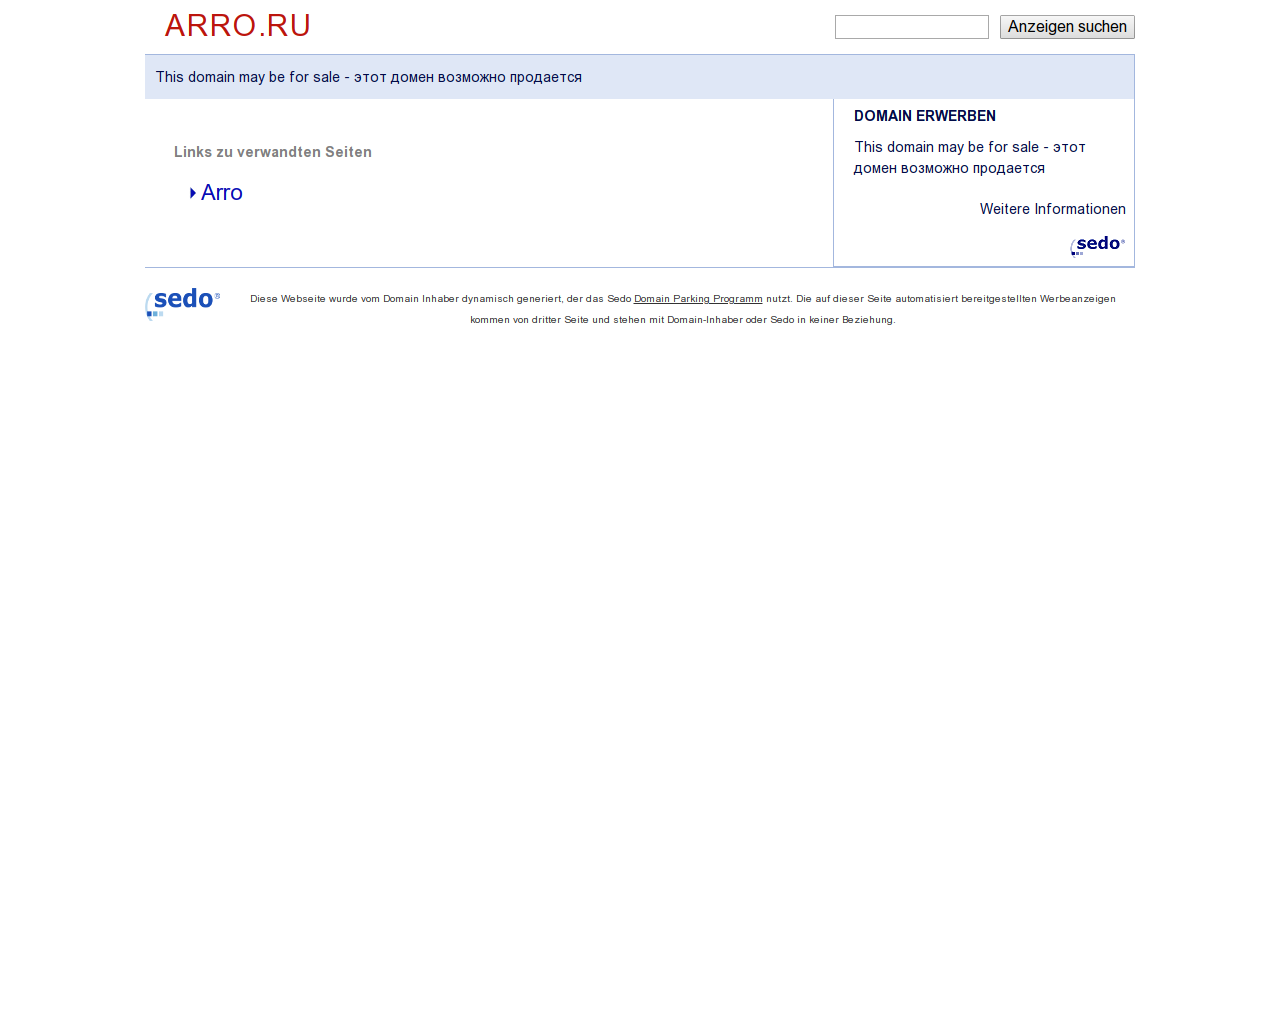 Изображение сайта arro.ru в разрешении 1280x1024